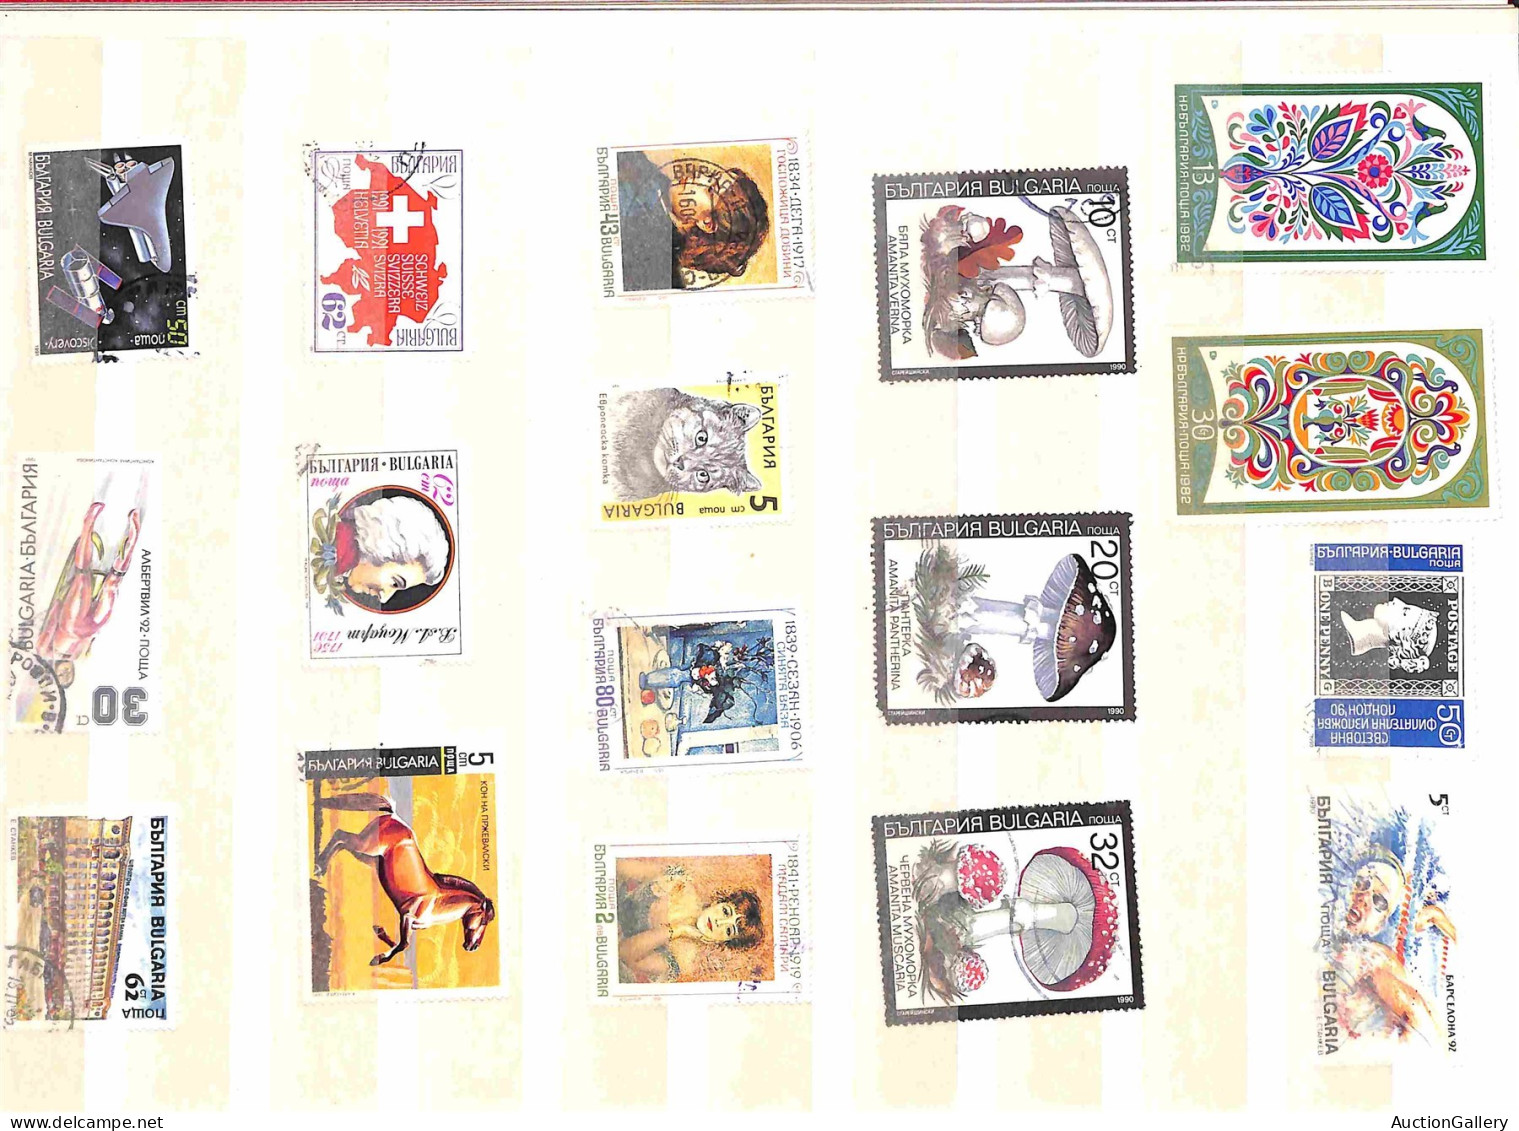 Lotti&Collezioni - Europa&Oltremare - BULGARIA - 1900/1990 circa - Album contenente oltre 400 francobolli nuovi e usati 